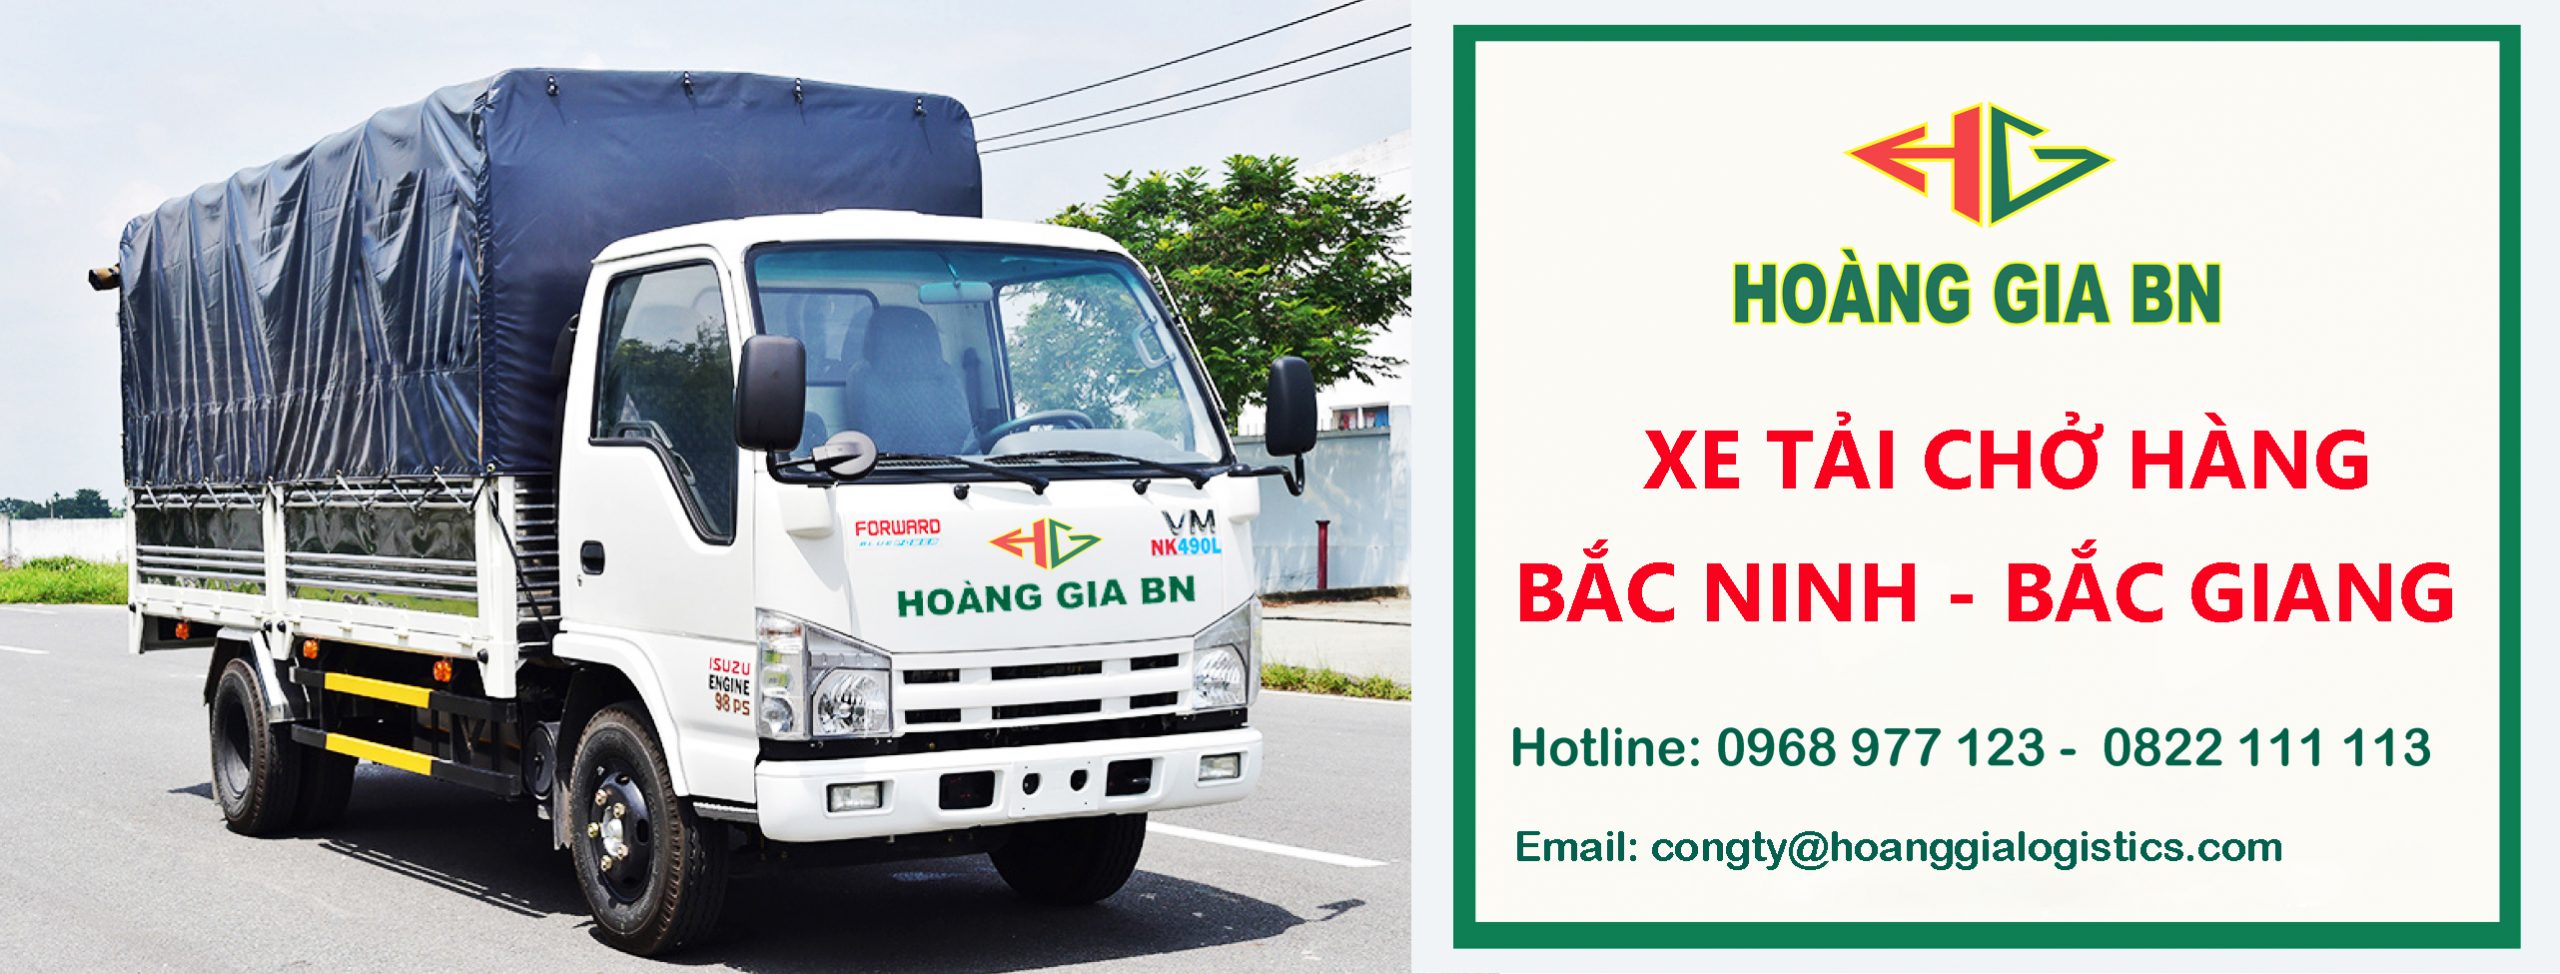 Dịch vụ xe tải chở hàng giá rẻ tại Bắc Ninh - Bắc Giang